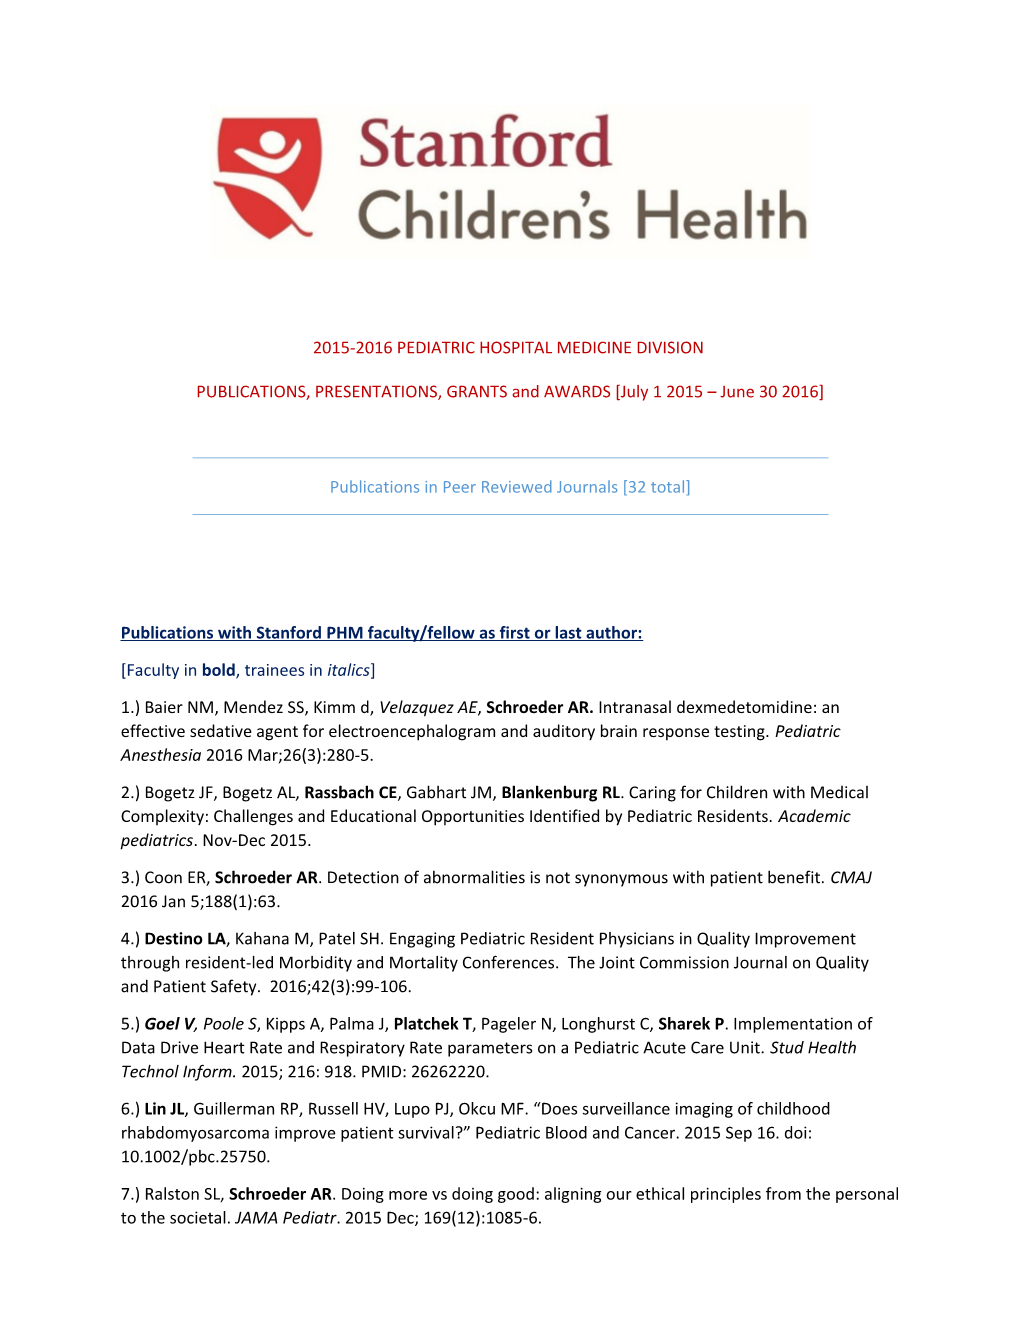 2015-2016 Pediatric Hospital Medicine Division